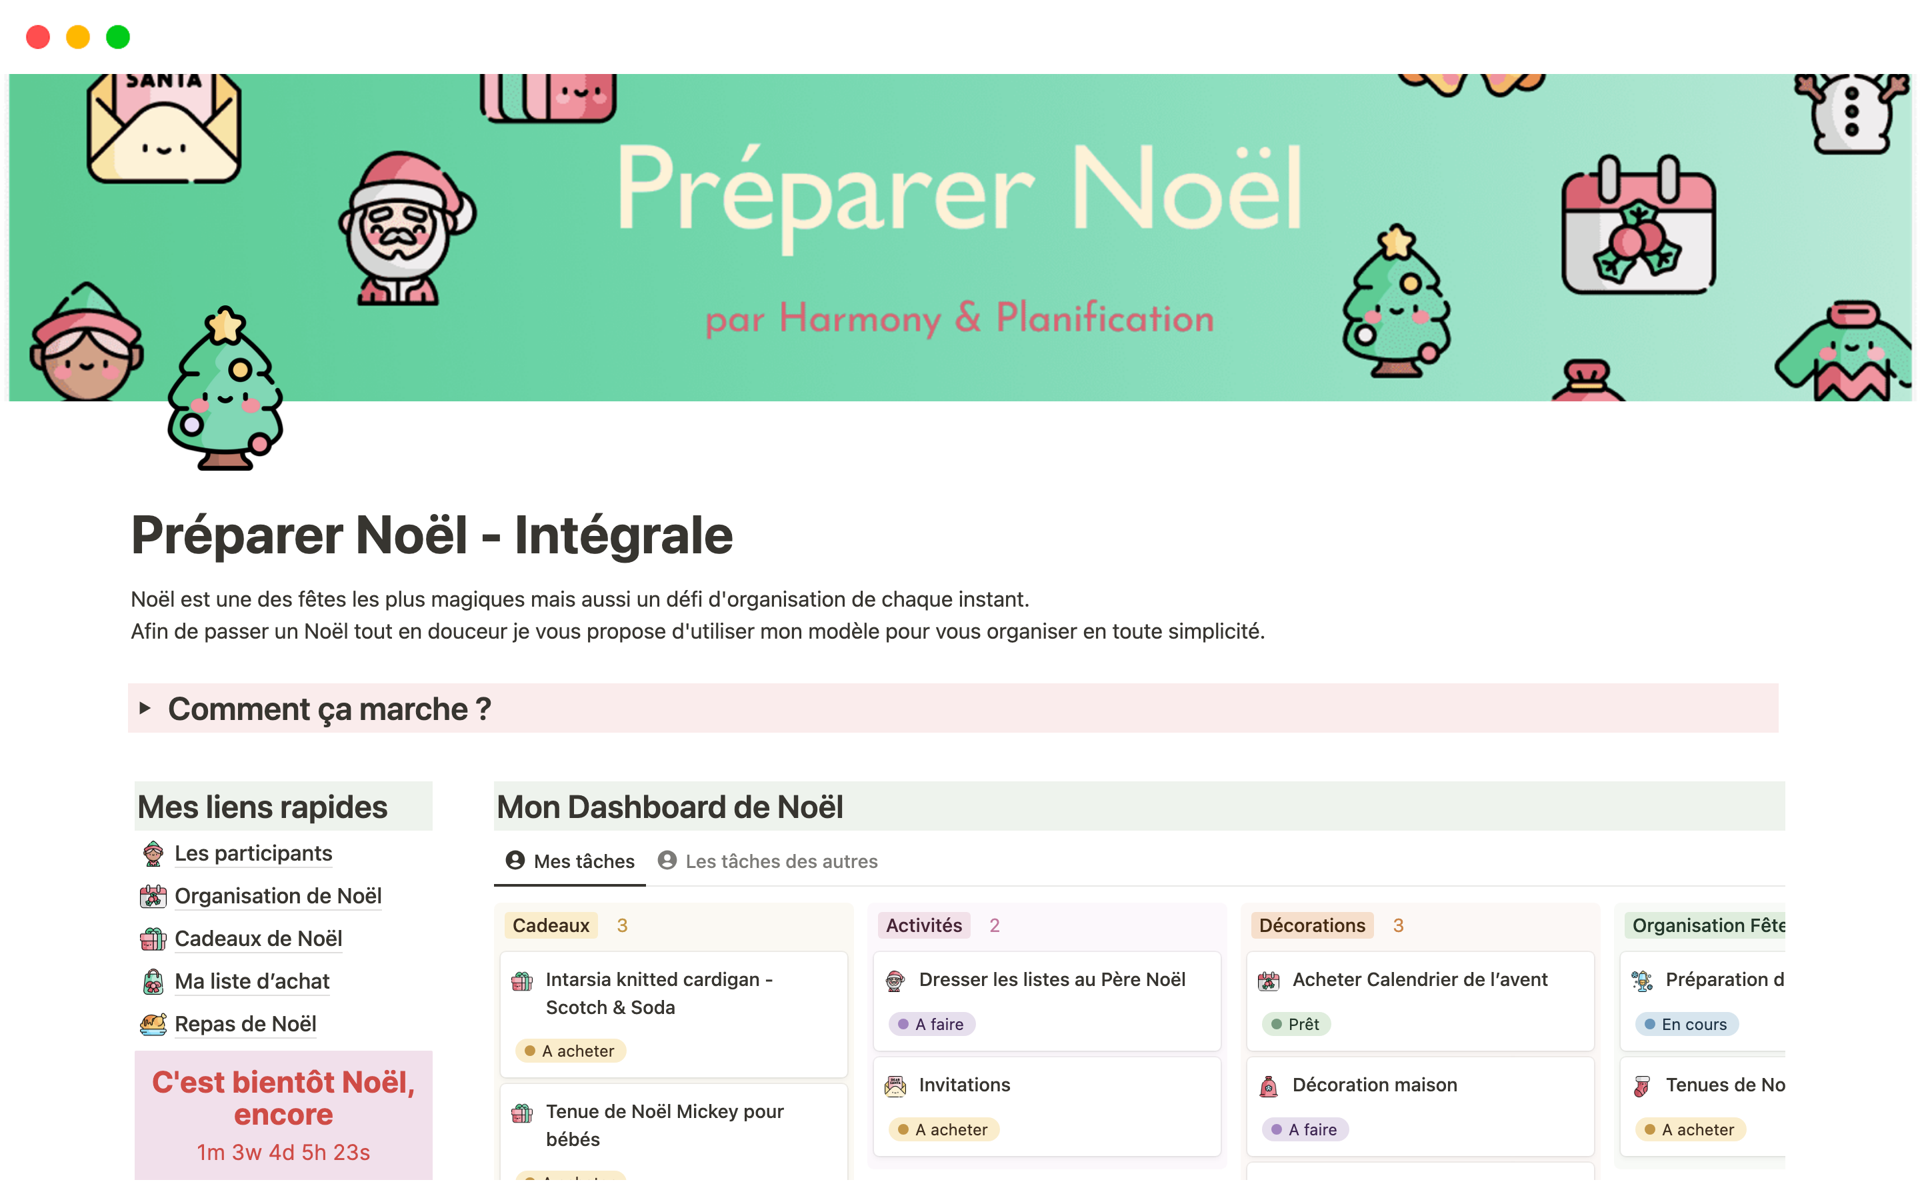 Eine Vorlagenvorschau für Préparer Noël - Intégrale